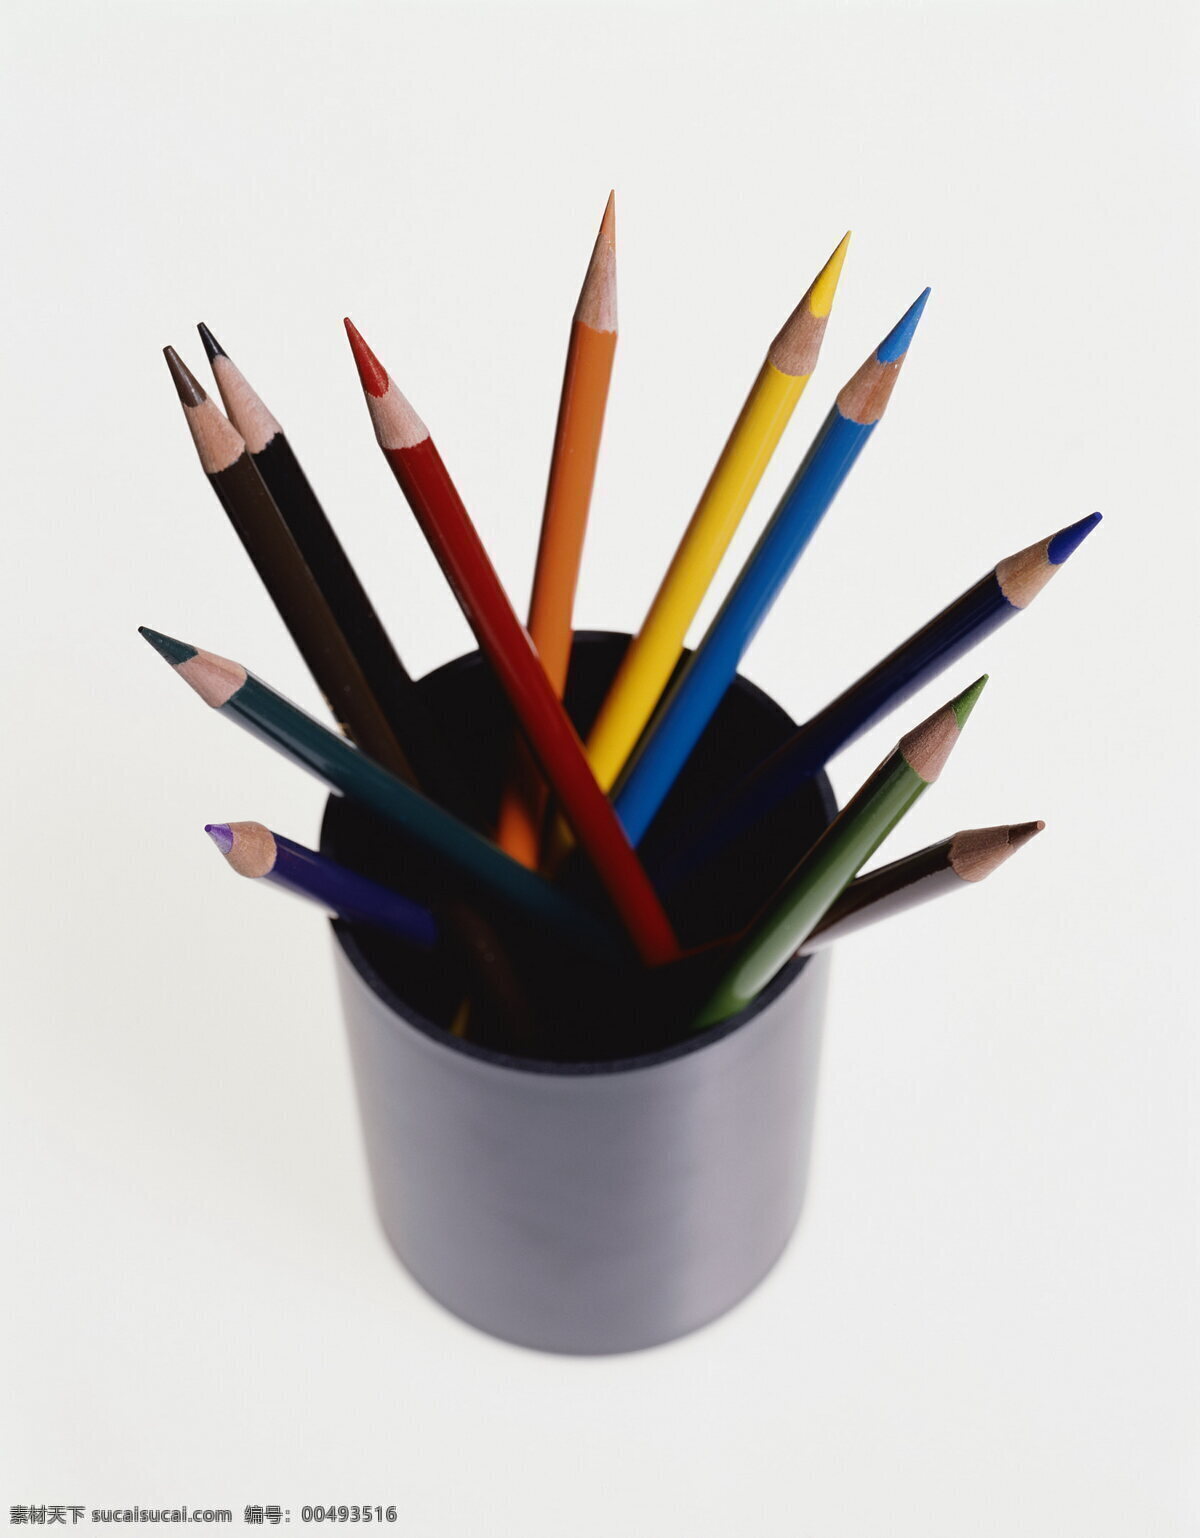 铅笔 笔 彩笔 彩铅 生活百科 学习用品 笔盒 笔罐 手绘笔 学习办公 psd源文件